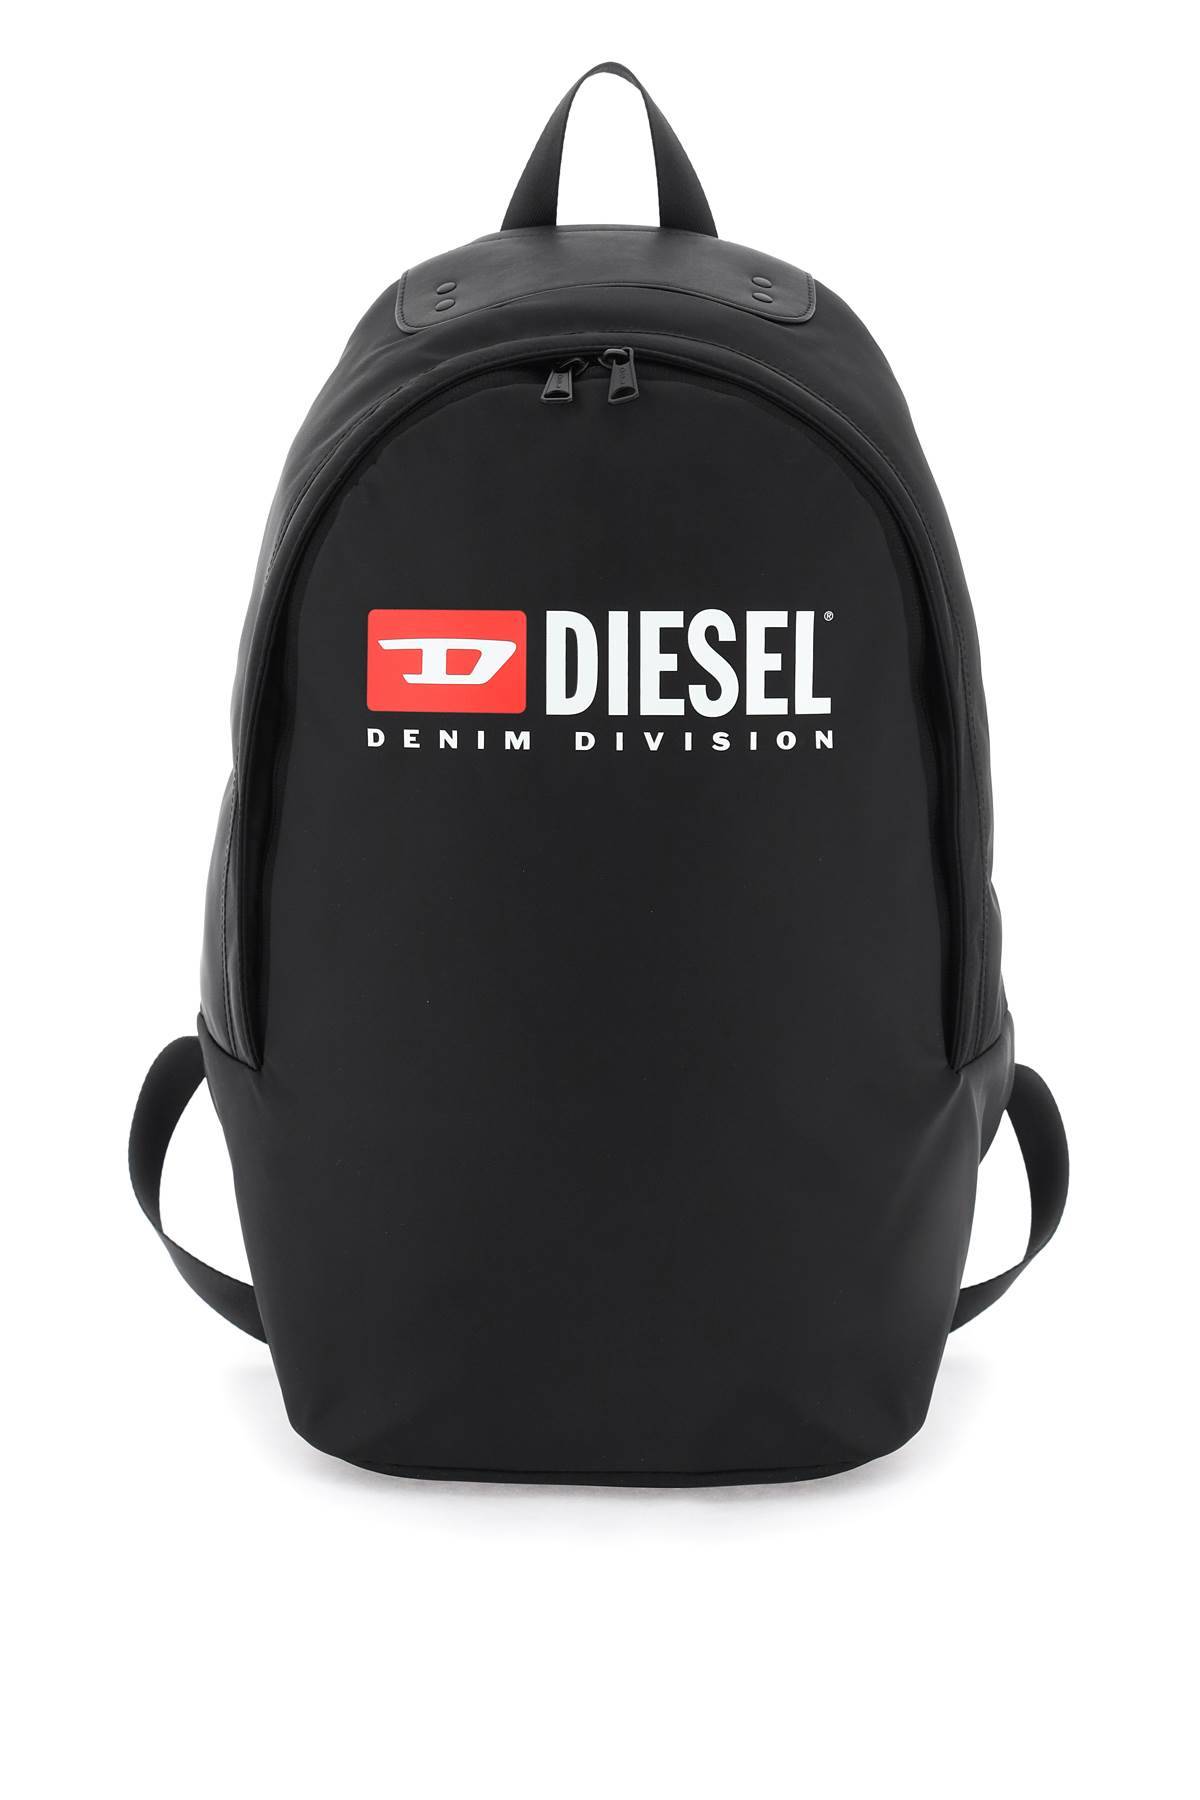 Diesel DIESEL logo rinke backpack